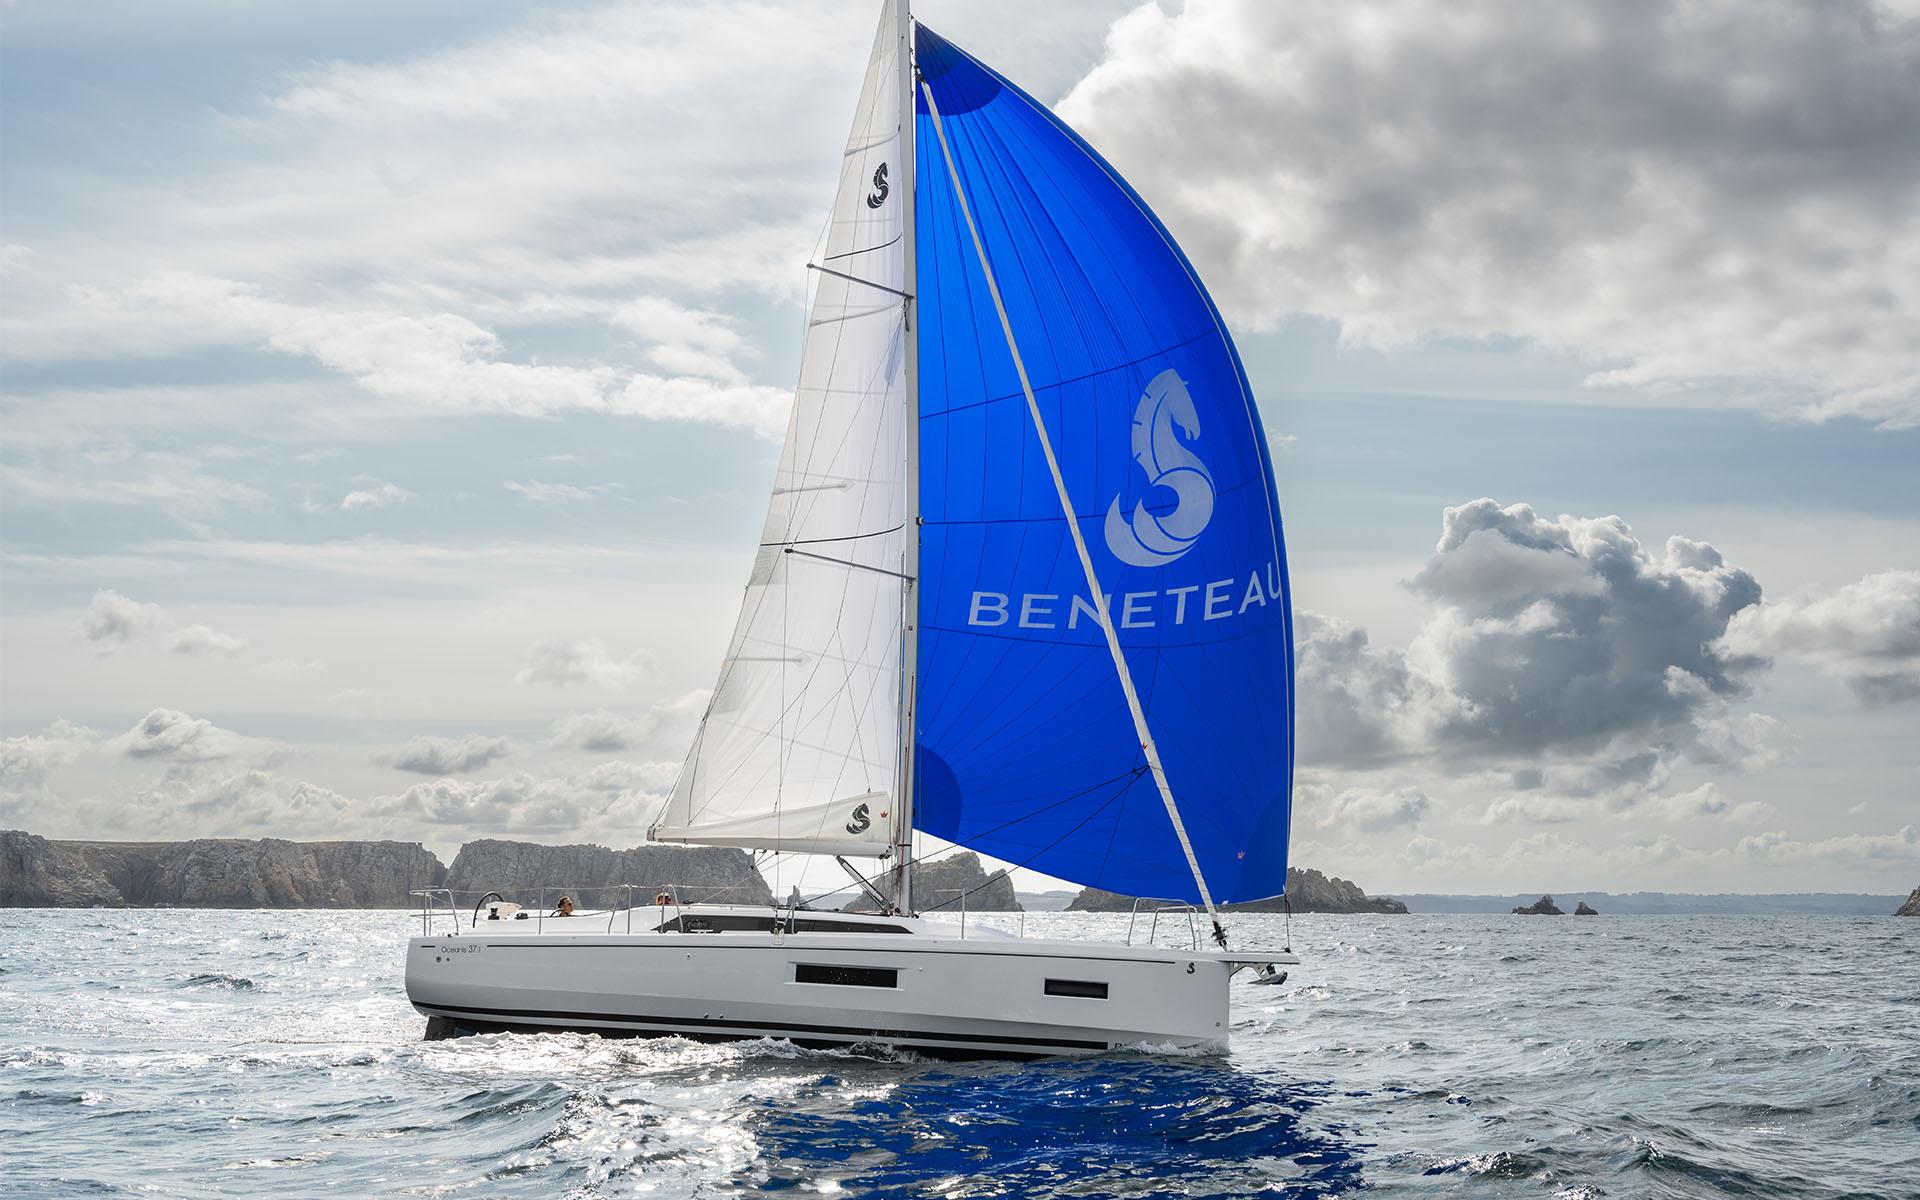  Yacht Photos Pics Beneteau 37.1 - Under sails